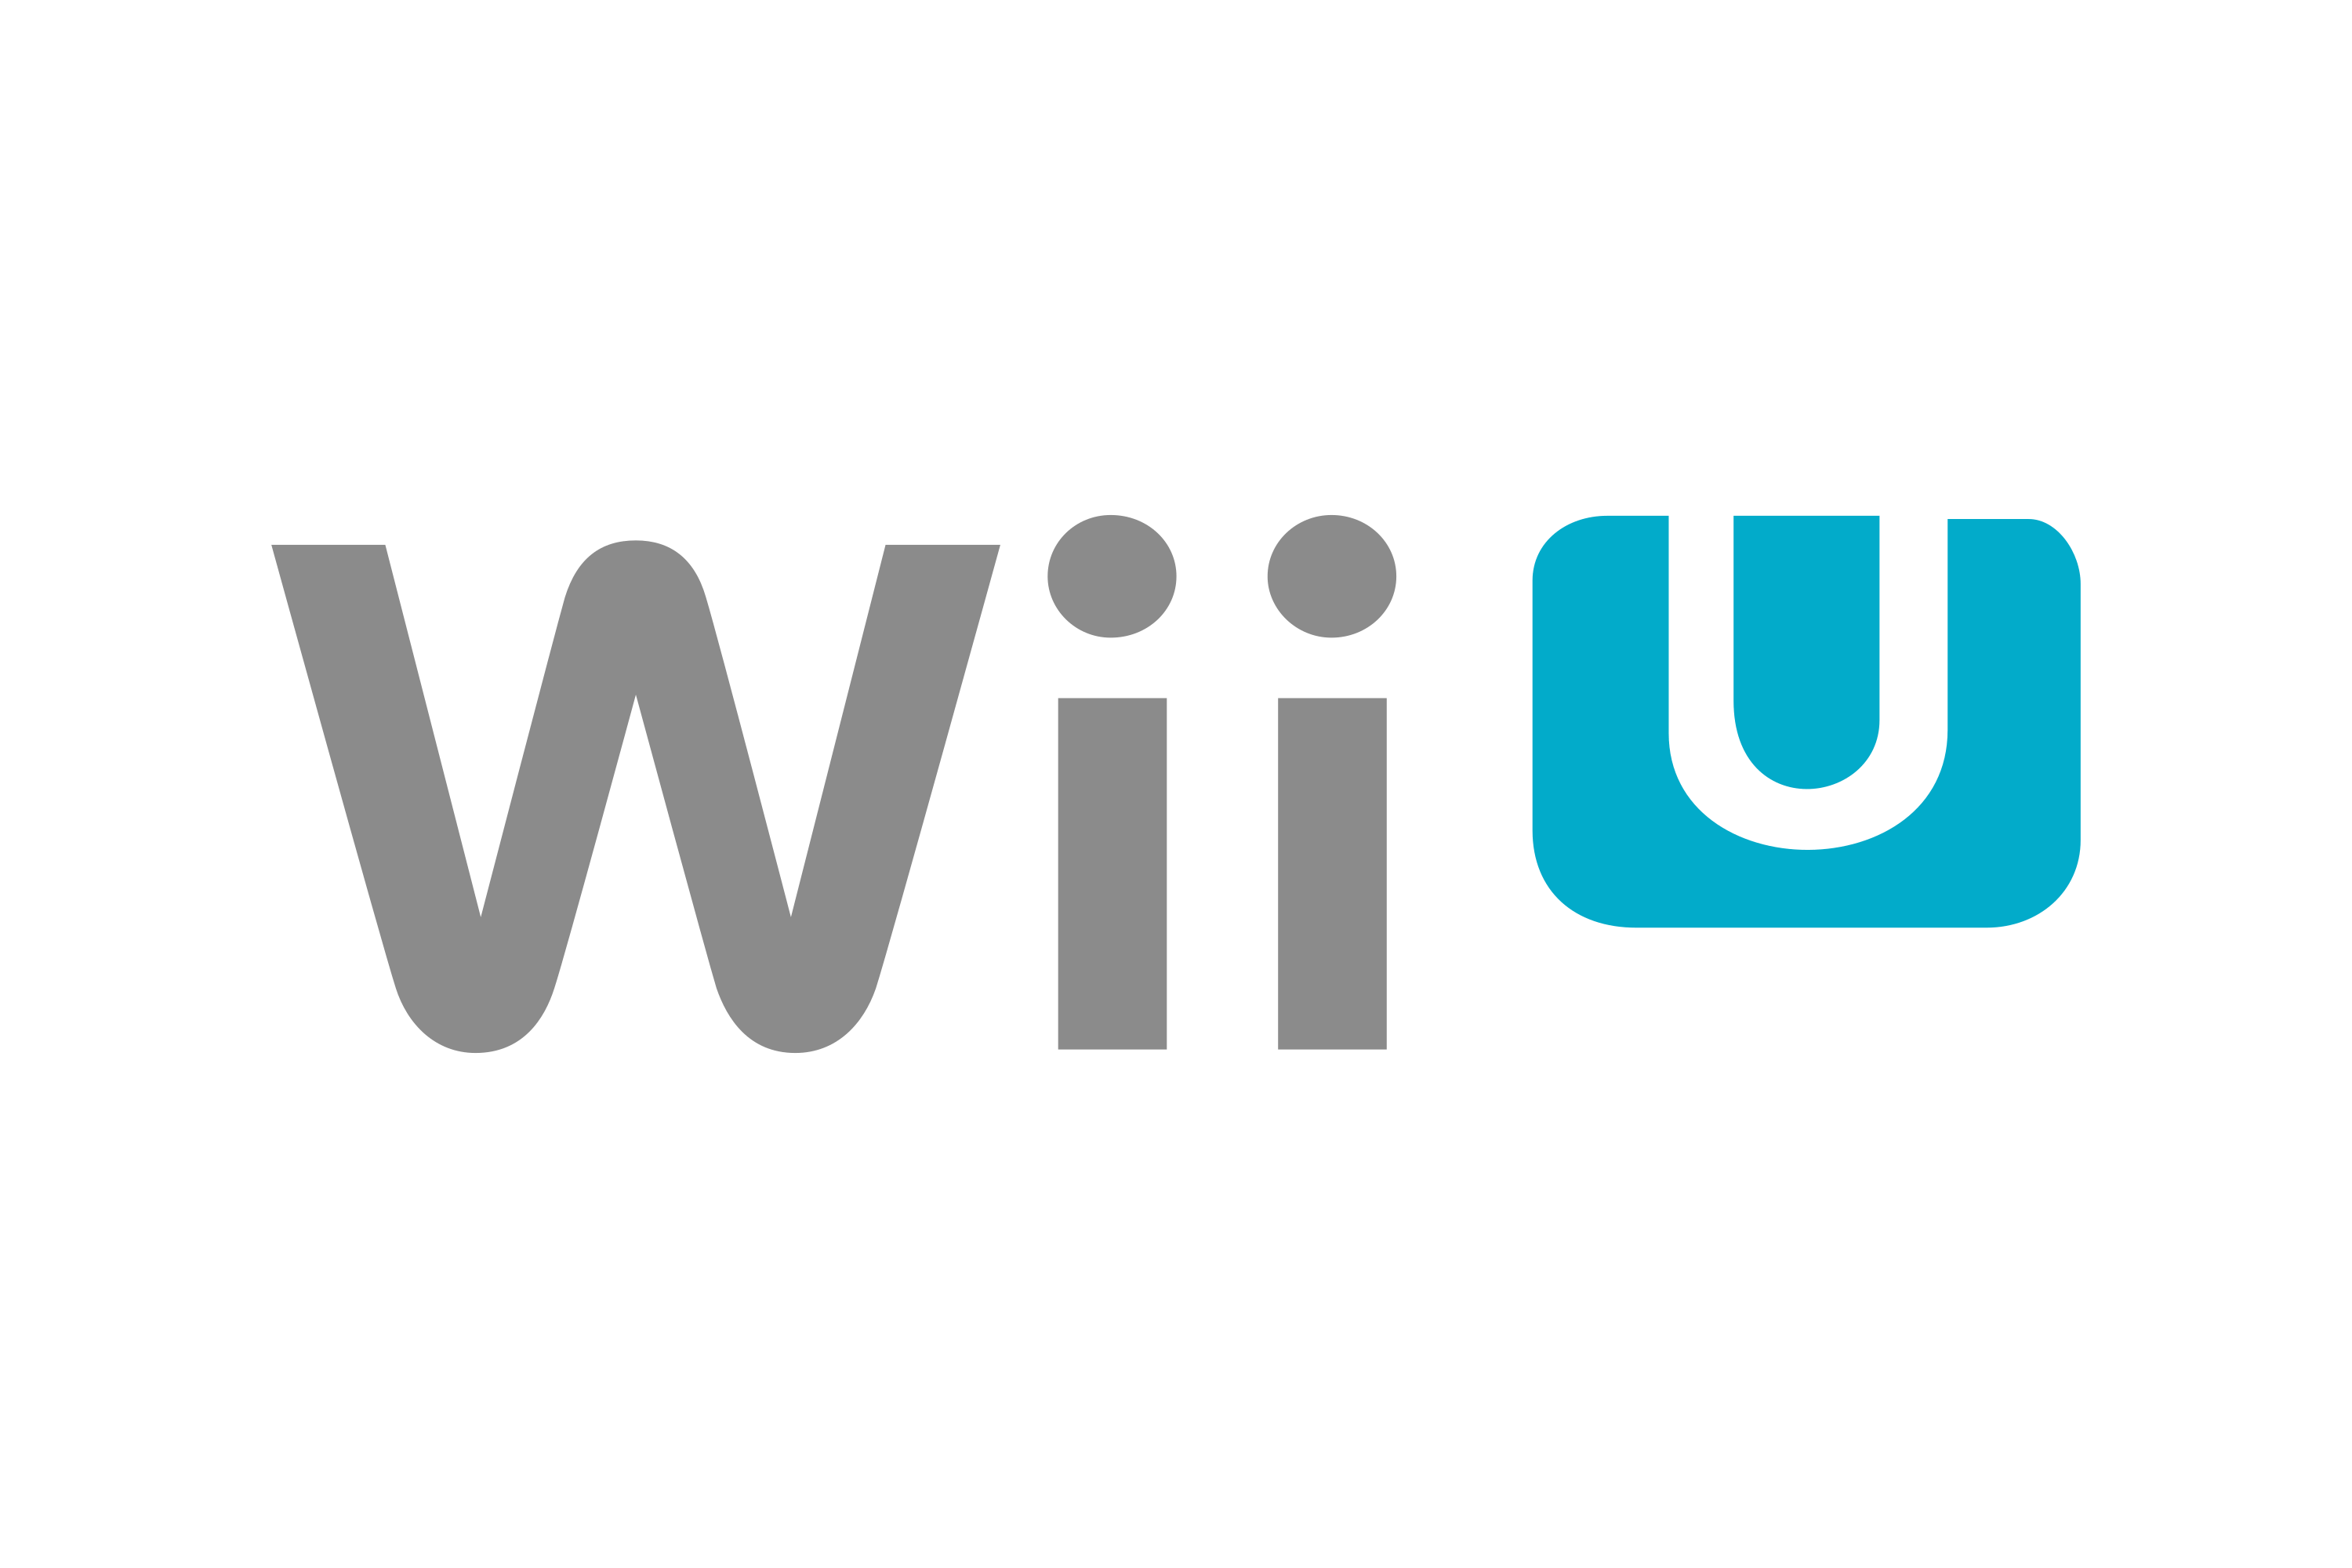 massa Landgoed Penelope Download Wii U Logo in SVG Vector or PNG File Format - Logo.wine